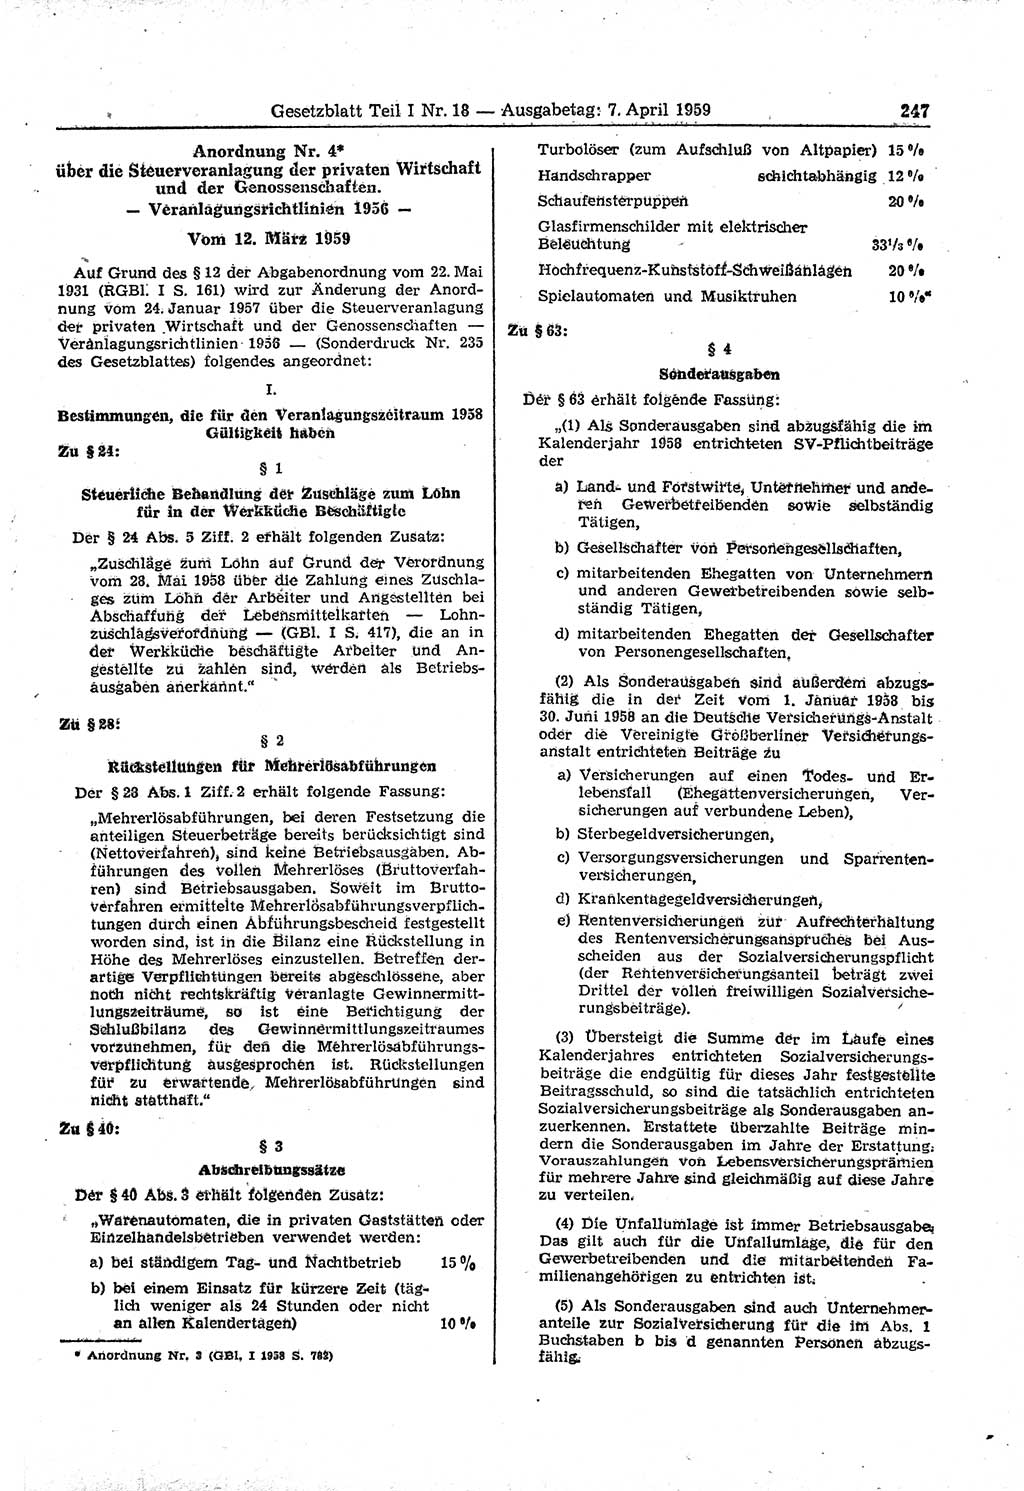 Gesetzblatt (GBl.) der Deutschen Demokratischen Republik (DDR) Teil Ⅰ 1959, Seite 247 (GBl. DDR Ⅰ 1959, S. 247)